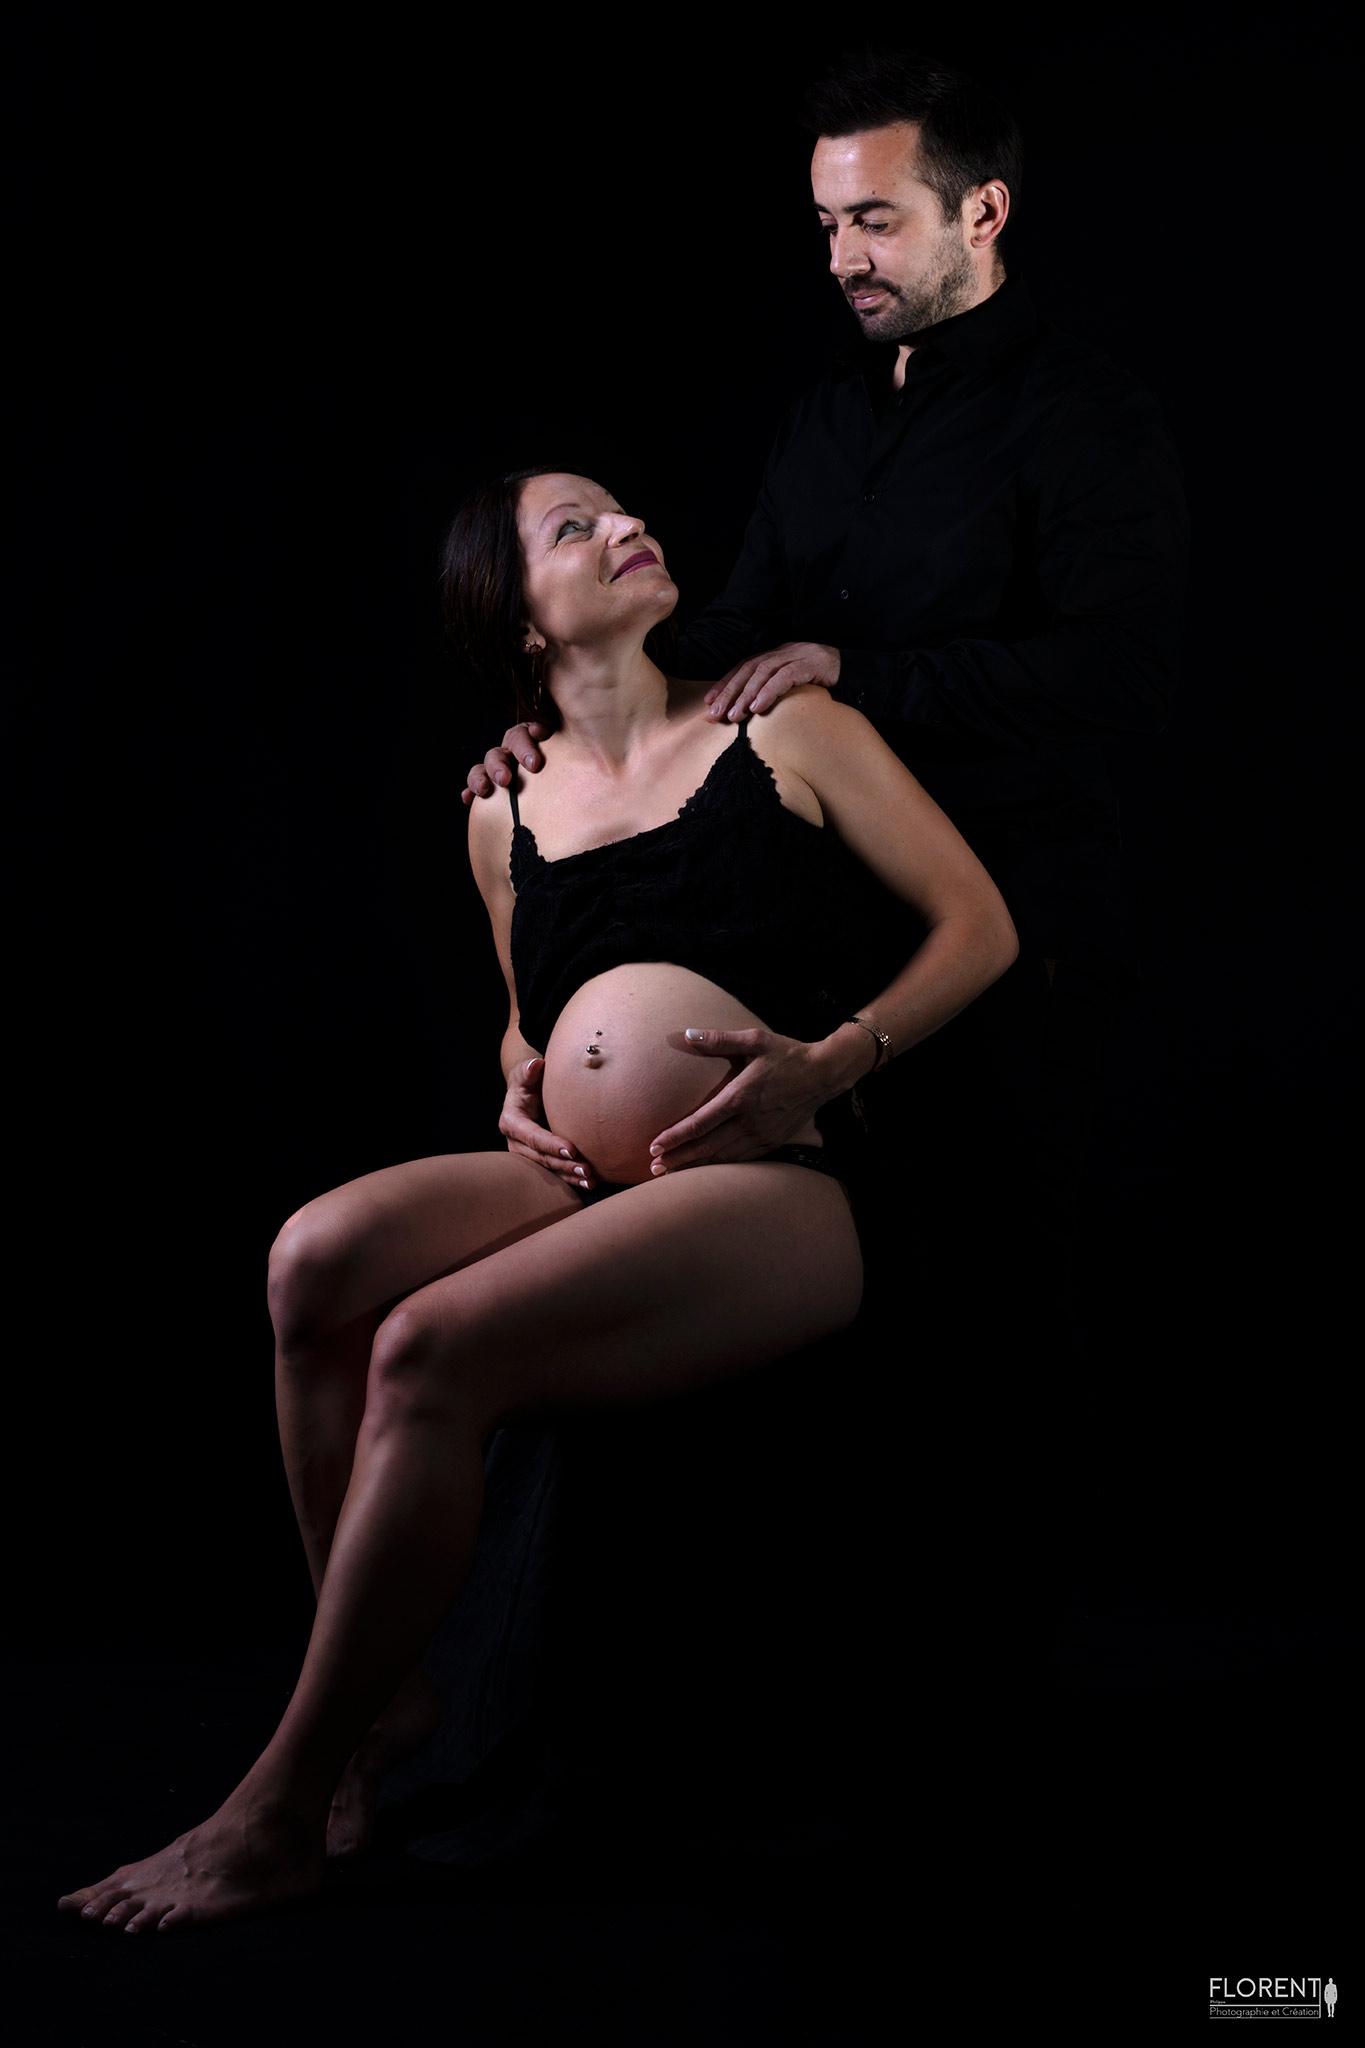 Photo maternité magique d'un couple sur fonds noir en studio florent boulogne sur mer calais lille paris le touquet